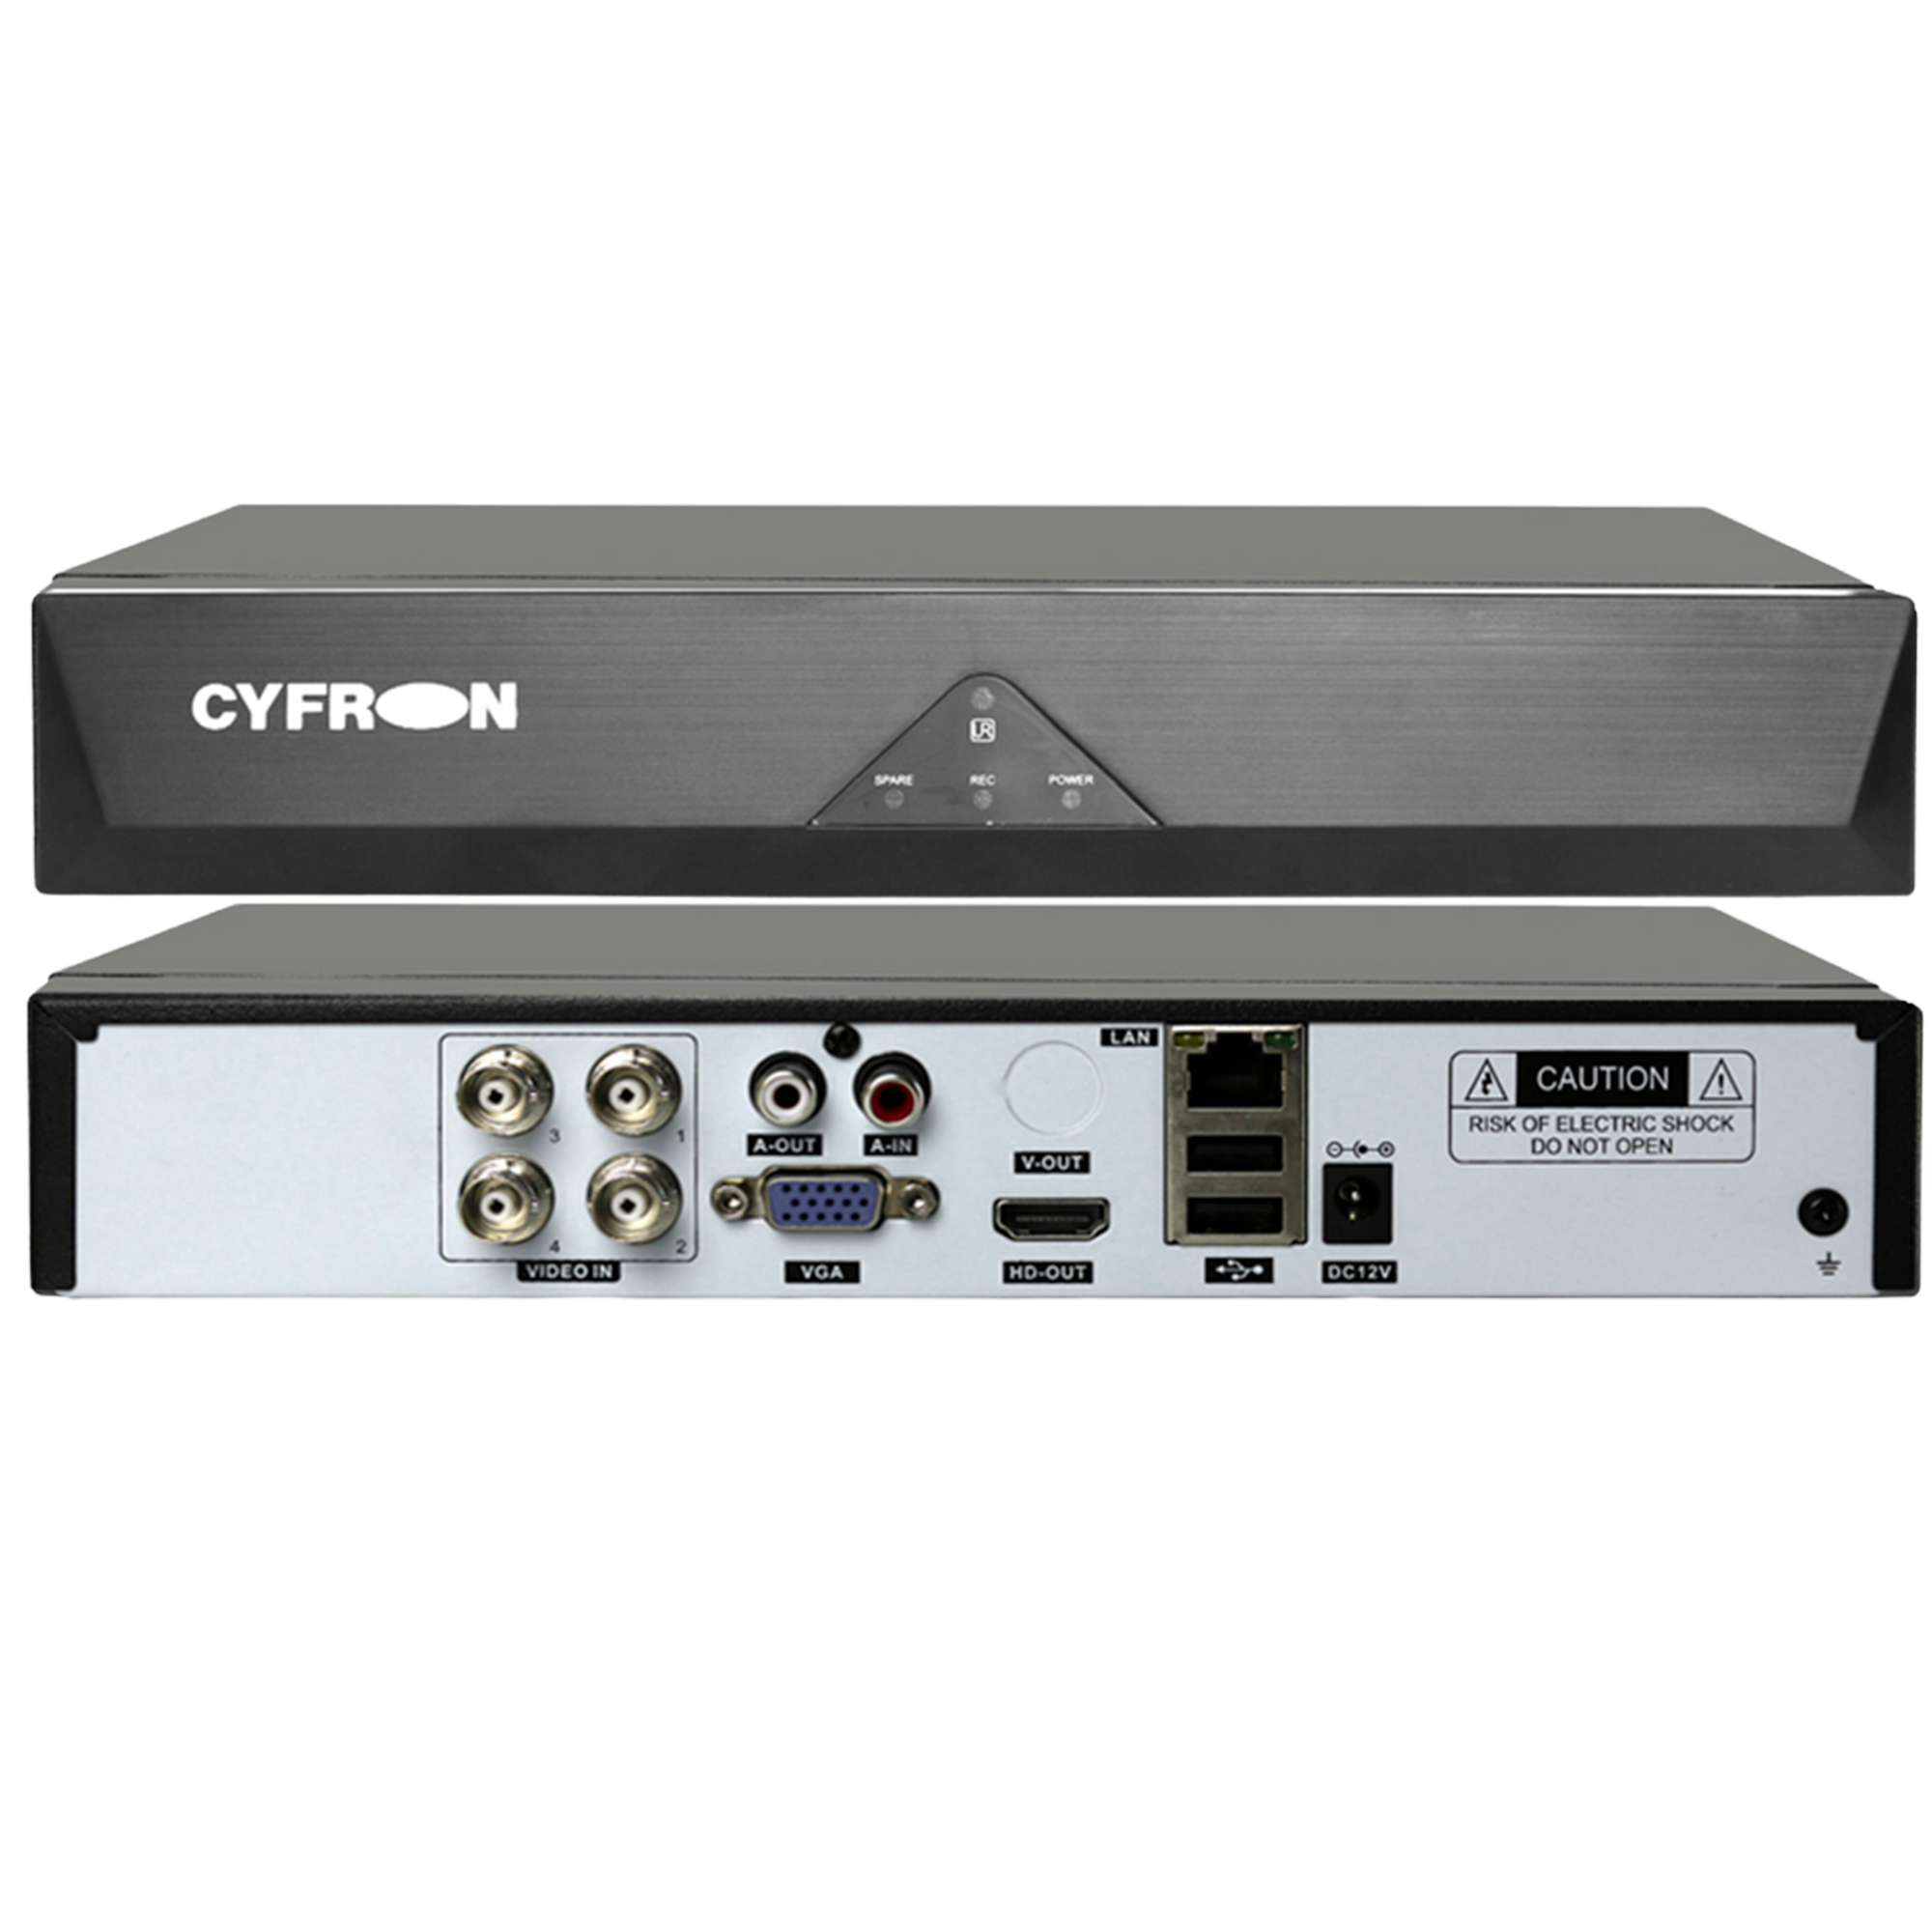 Гибридный видеорегистратор Cyfron DV464ATH, 5Мп-N, 4 видео, 1 звук, 1 HDD видеорегистратор гибридный 4 канала xvr nvr